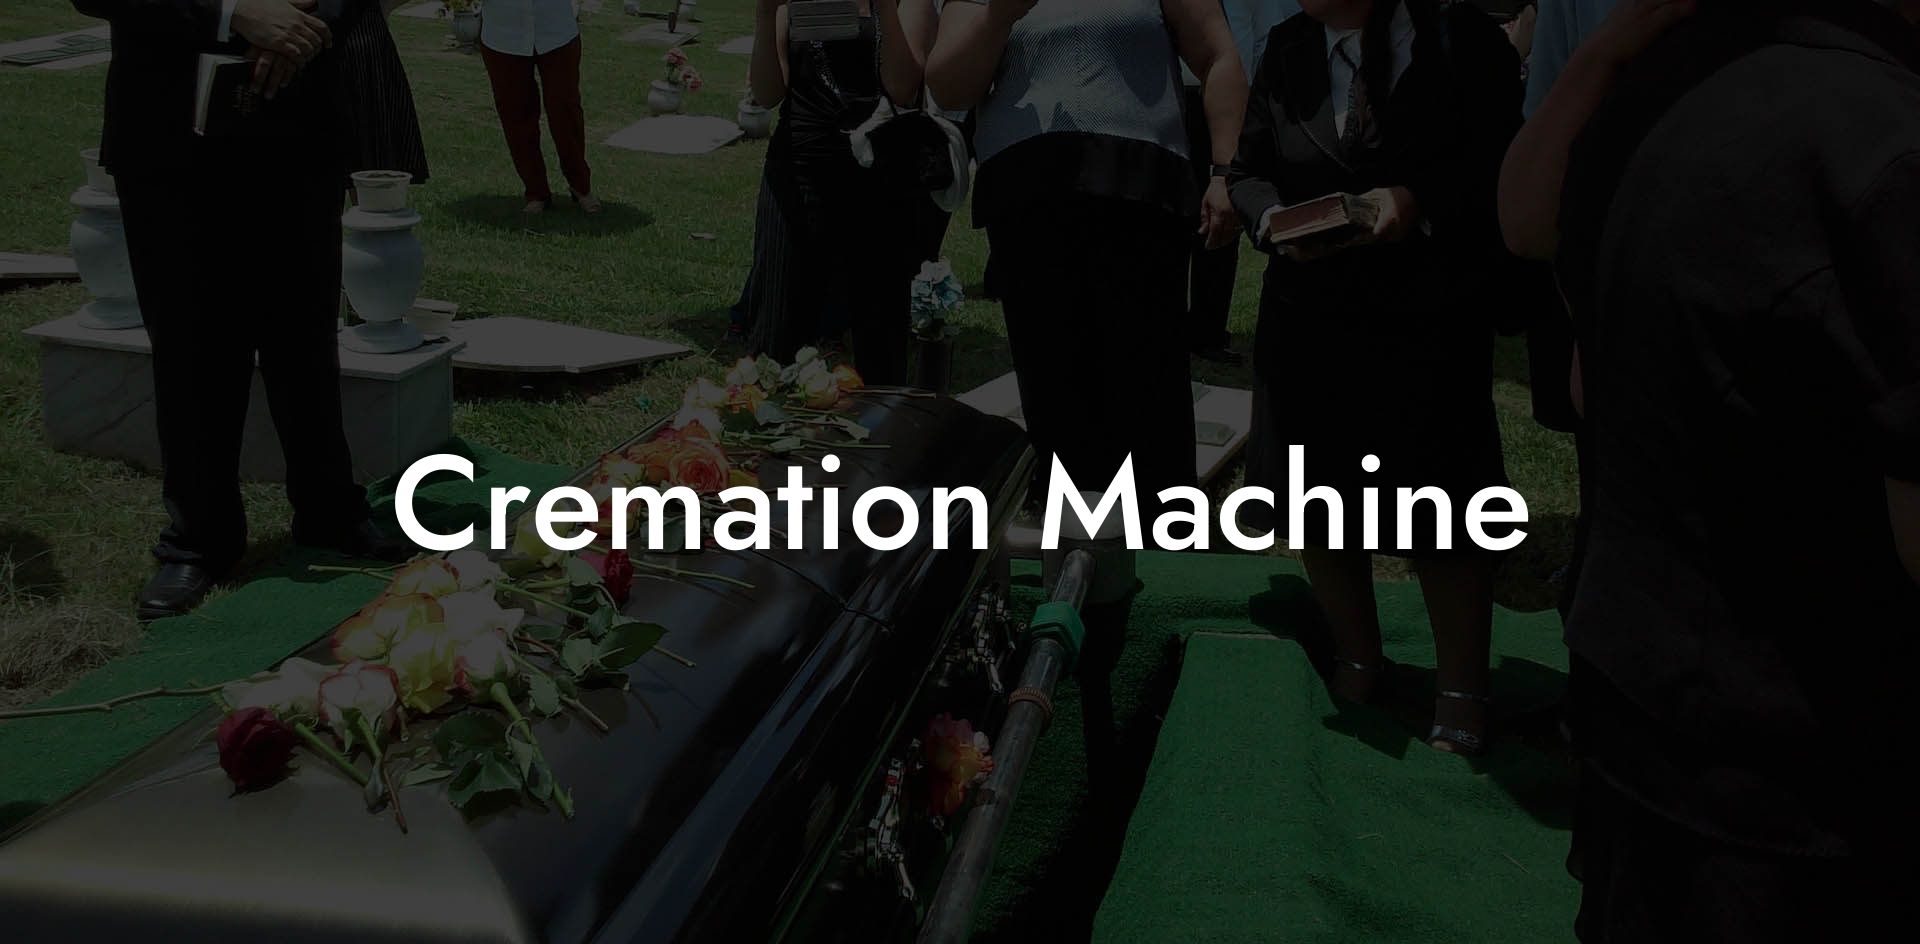 Cremation Machine